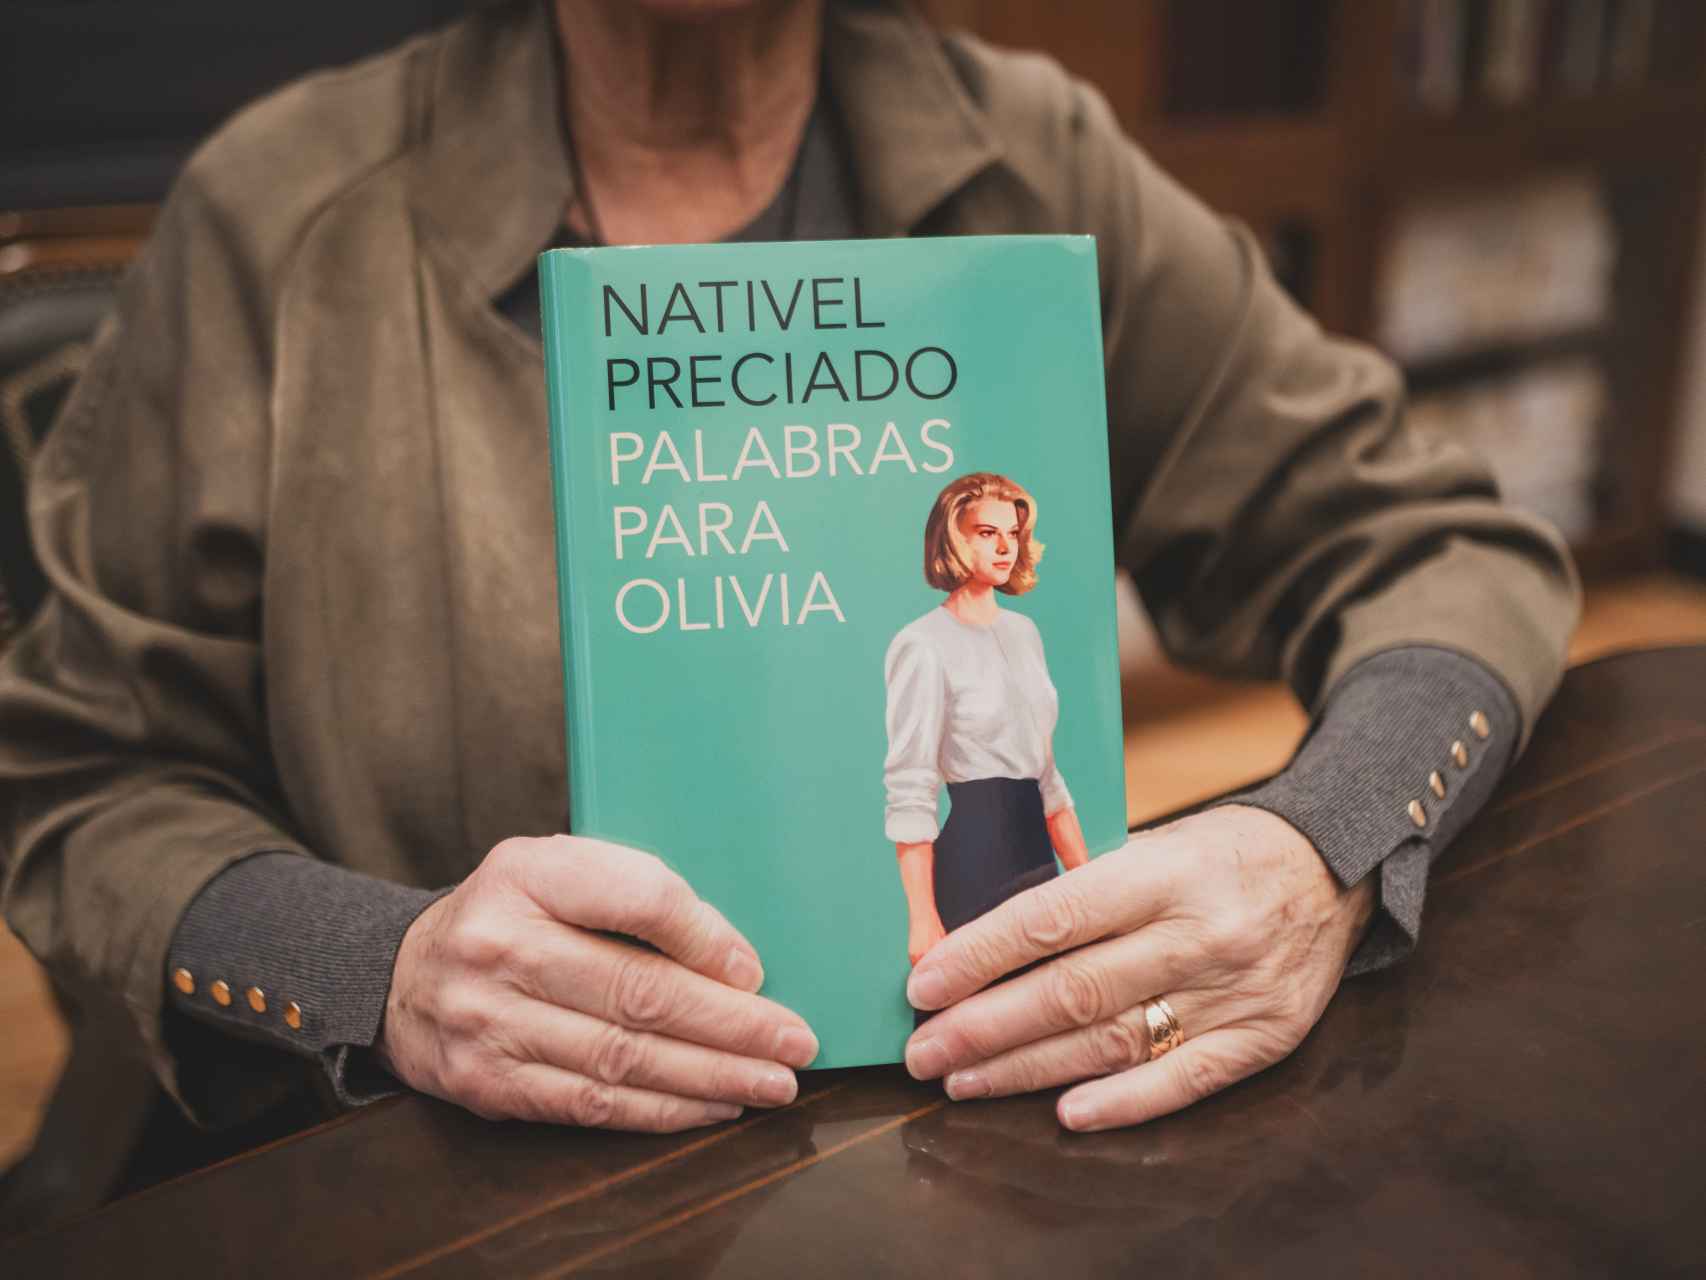 El nuevo libro de Nativel Preciado.